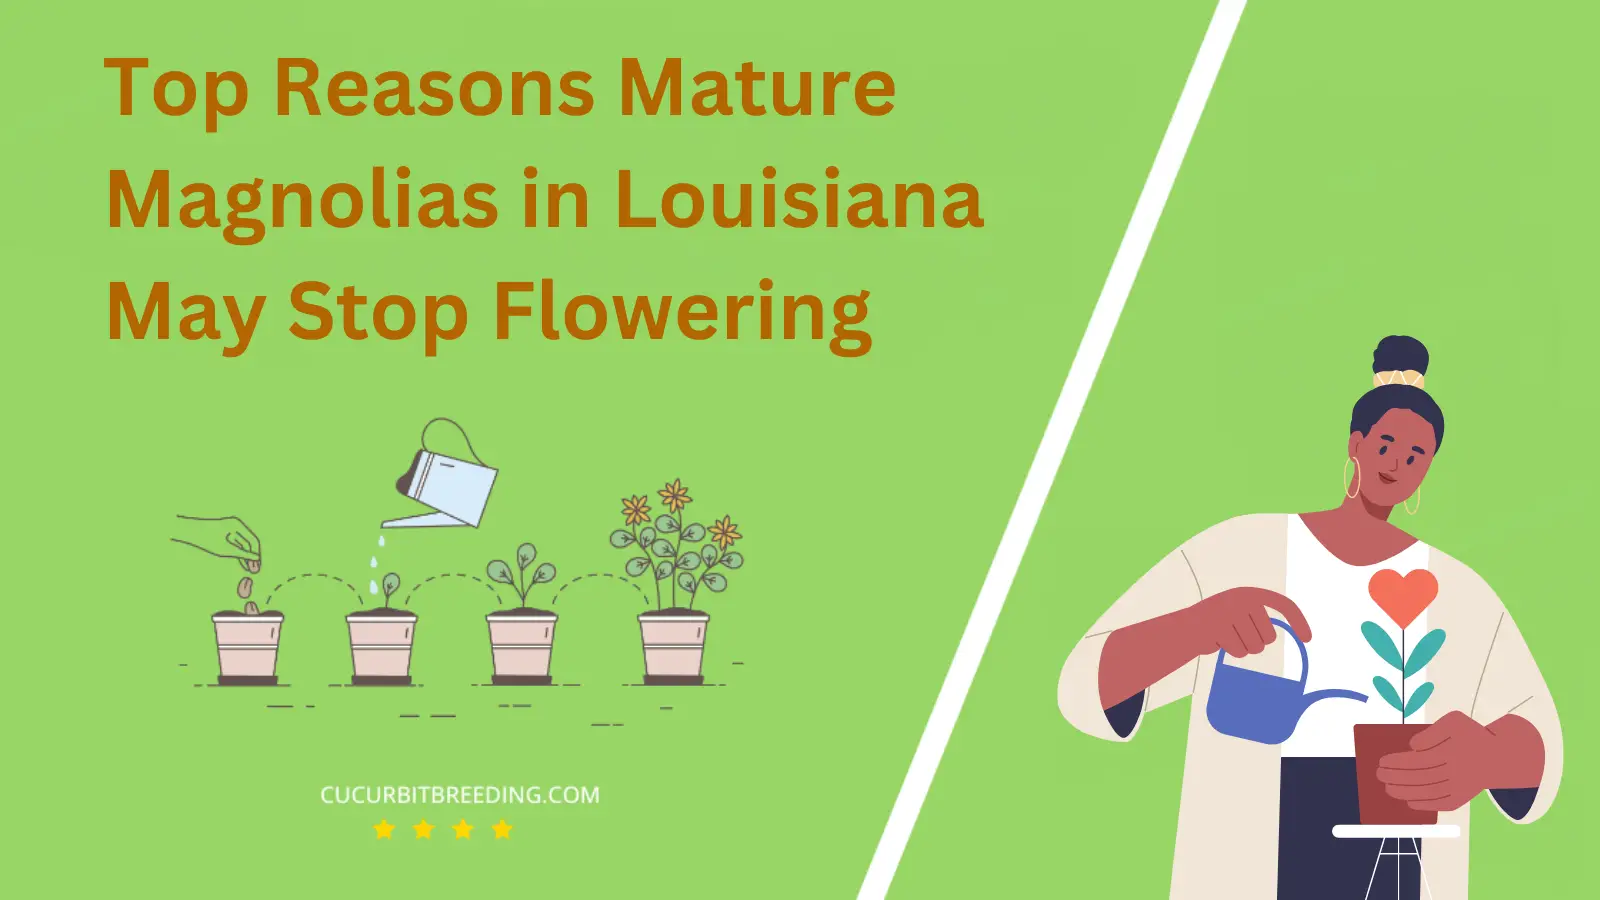 Top Reasons Mature Magnolias in Louisiana May Stop Flowering